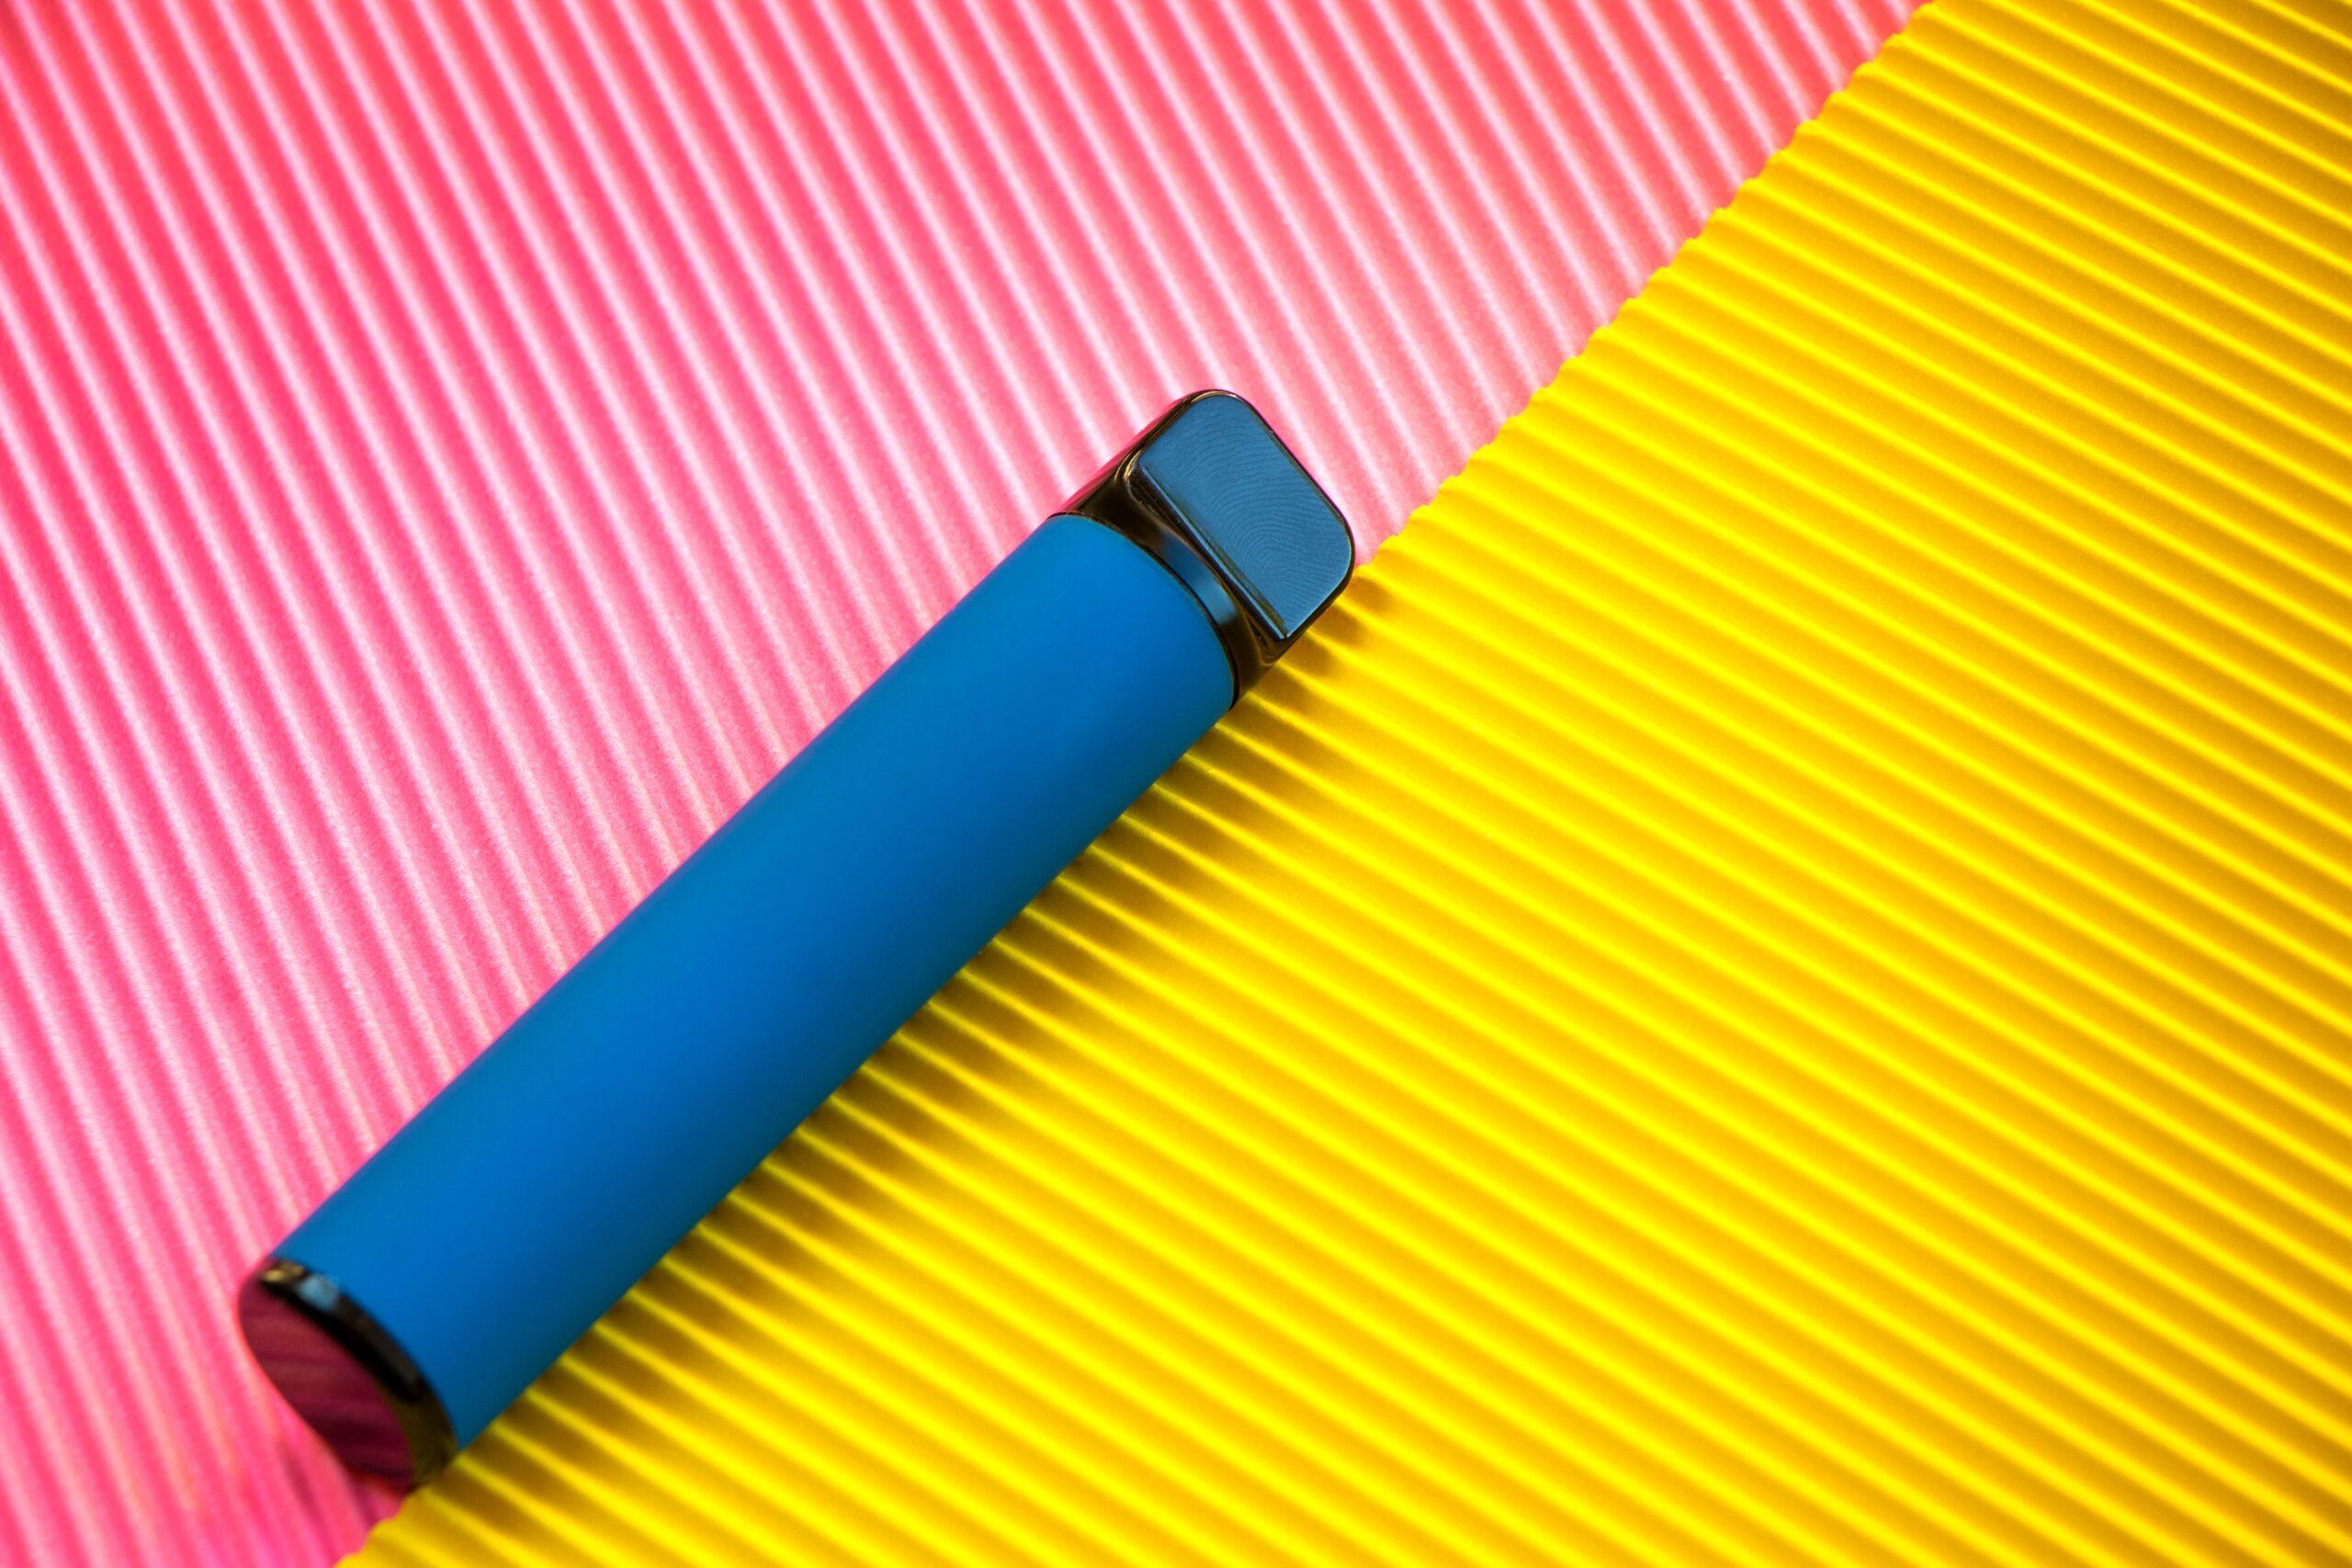 Ein blaues Einweg-E-Zigaretten-Gerät liegt auf einem bunten Hintergrund, der aus diagonal gestreiften pinken und gelben Abschnitten besteht.